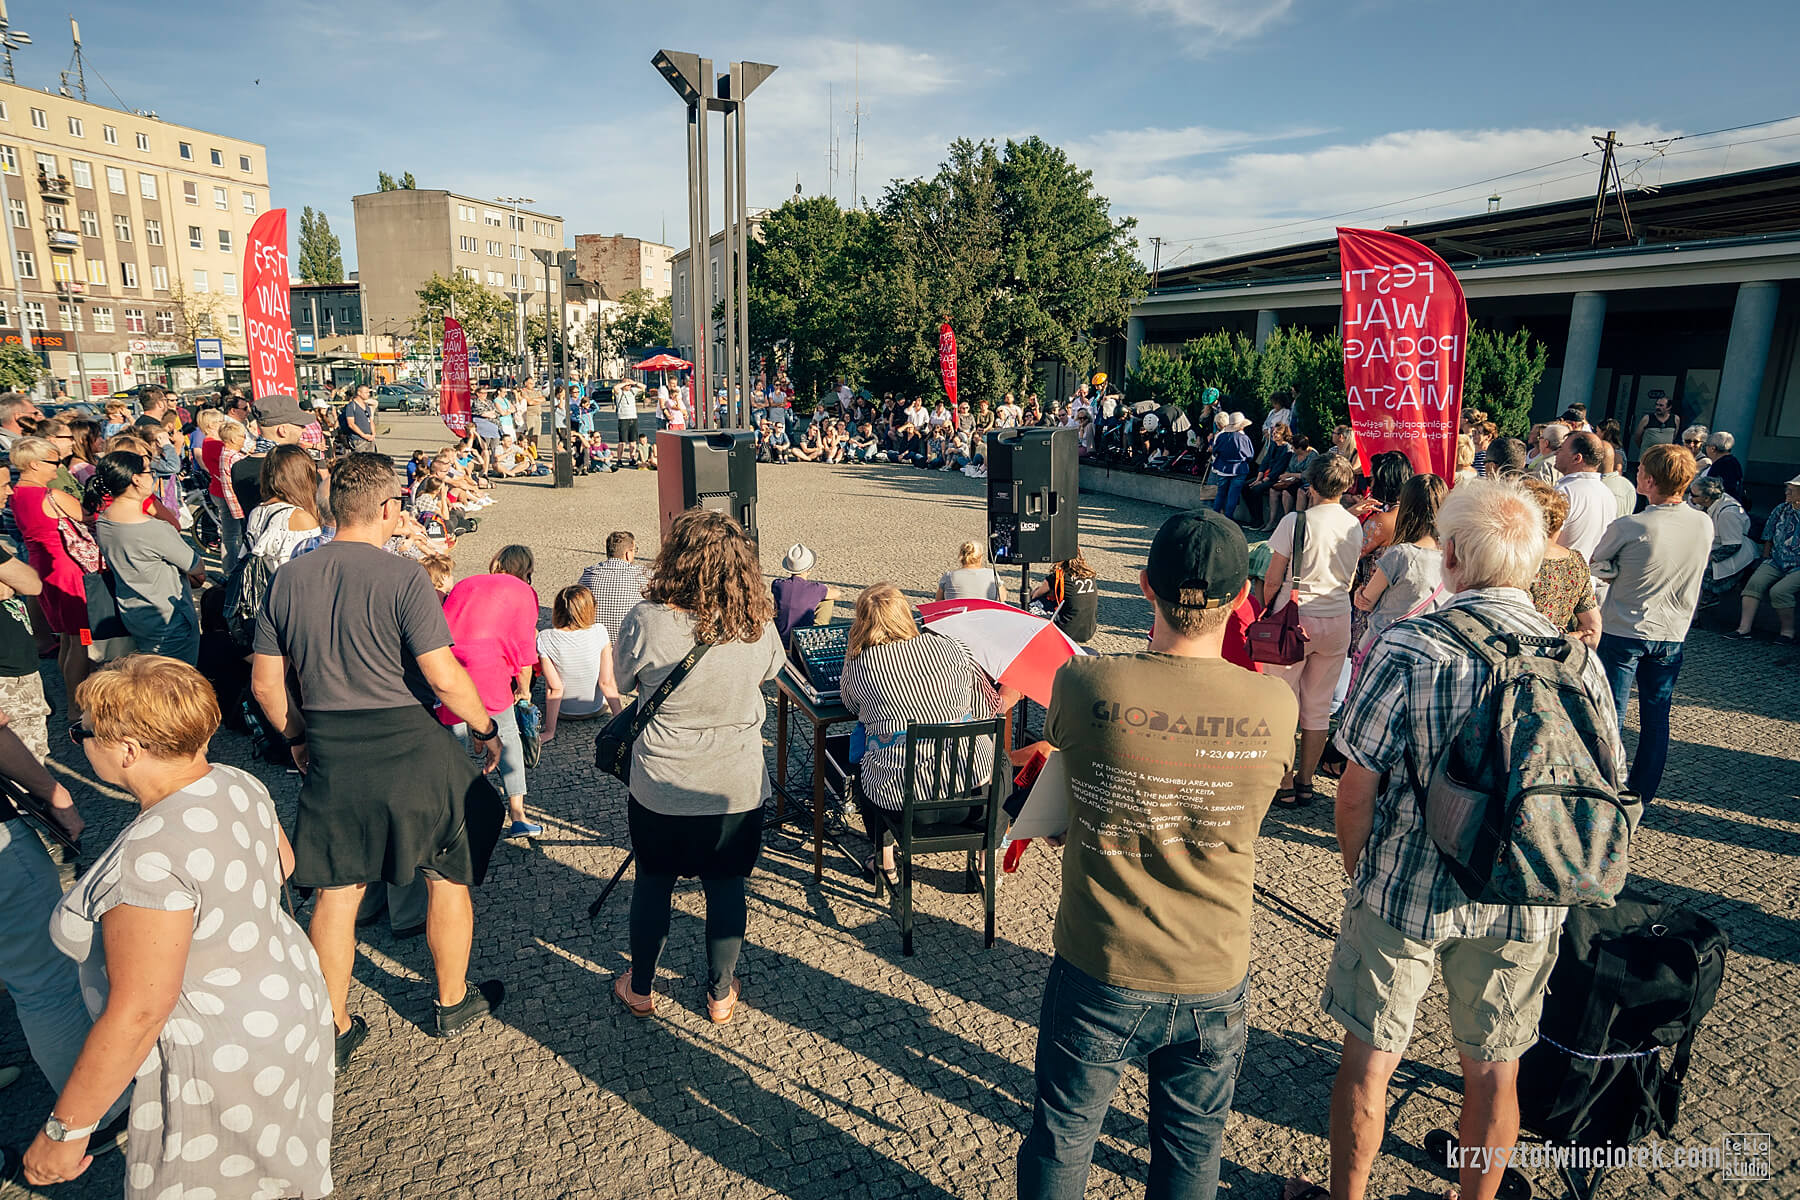 Plac przed dworcem Gdynia główna, wiele osób stoi bądź siedzi w okręgu, na zdjęciu widać ustawione nagłośnienie i banery festiwalu Pociąg do miasta